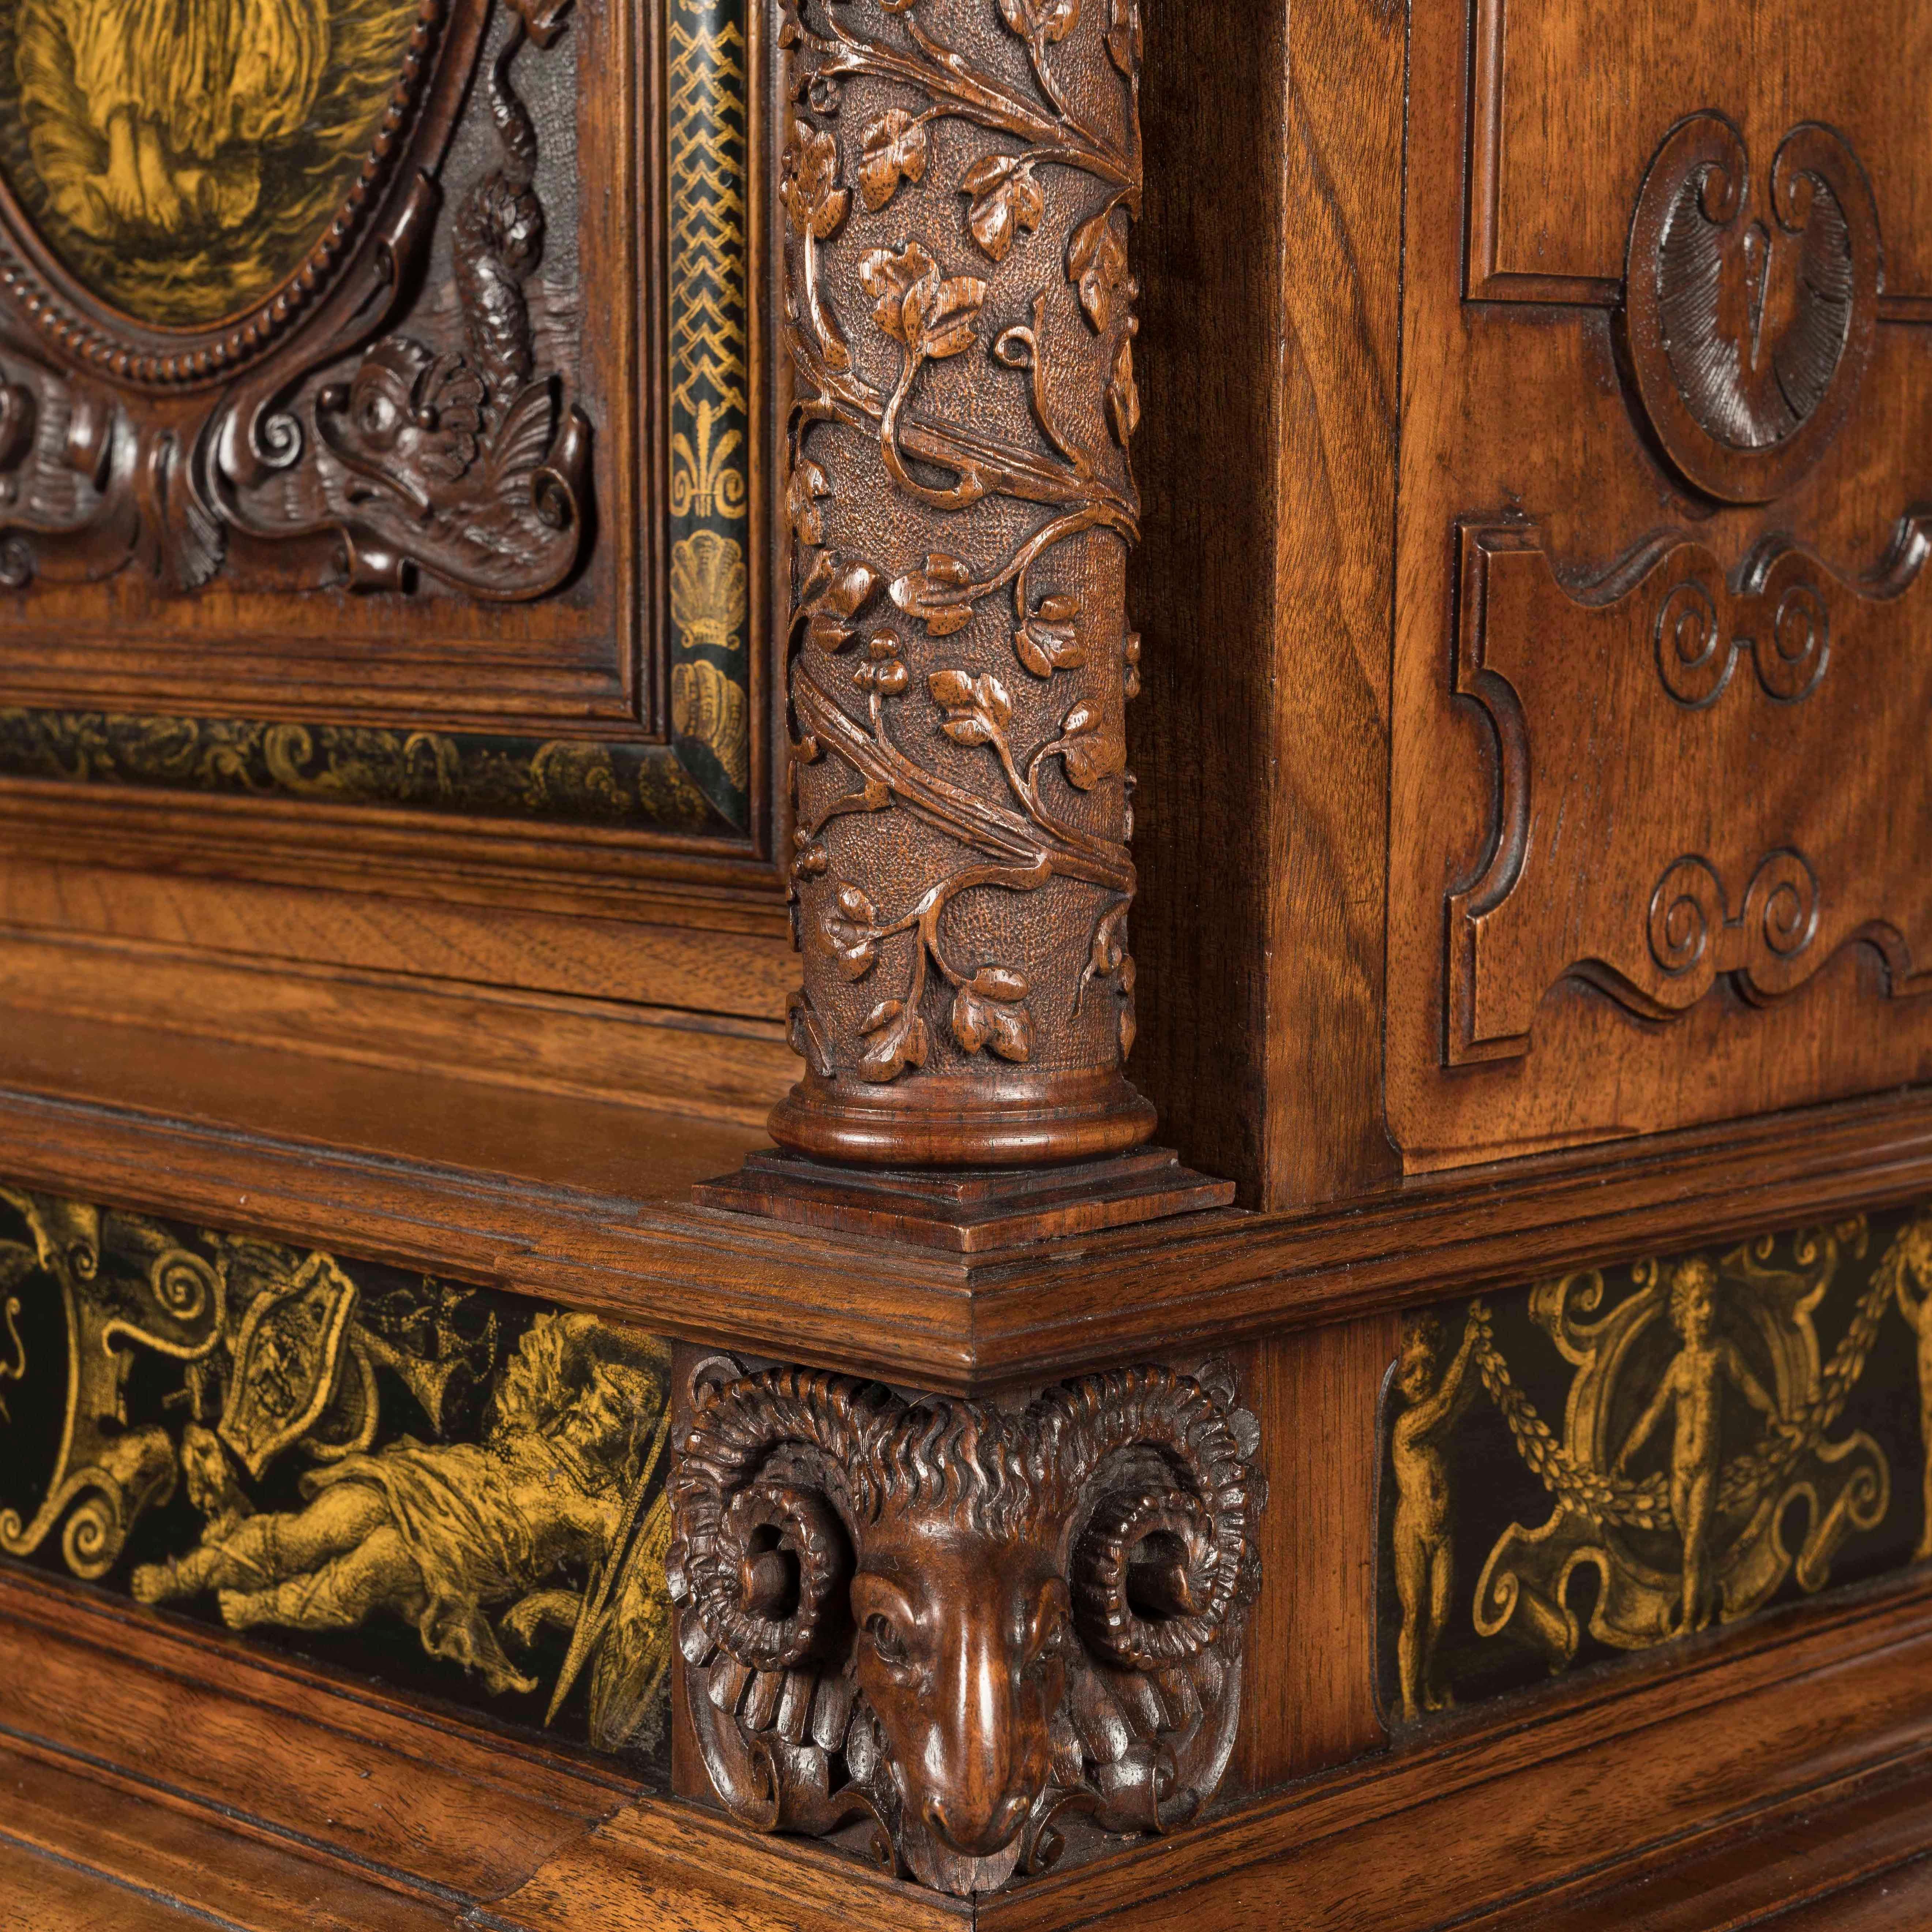 Un armario Gillows a la manera renacentista

Construido en madera de nogal, en parte ebonizada, y revestido con placas convexas pintadas en grisalla; se eleva sobre patas oblongas, tiene un estante inferior perfilado, con una placa elíptica pintada